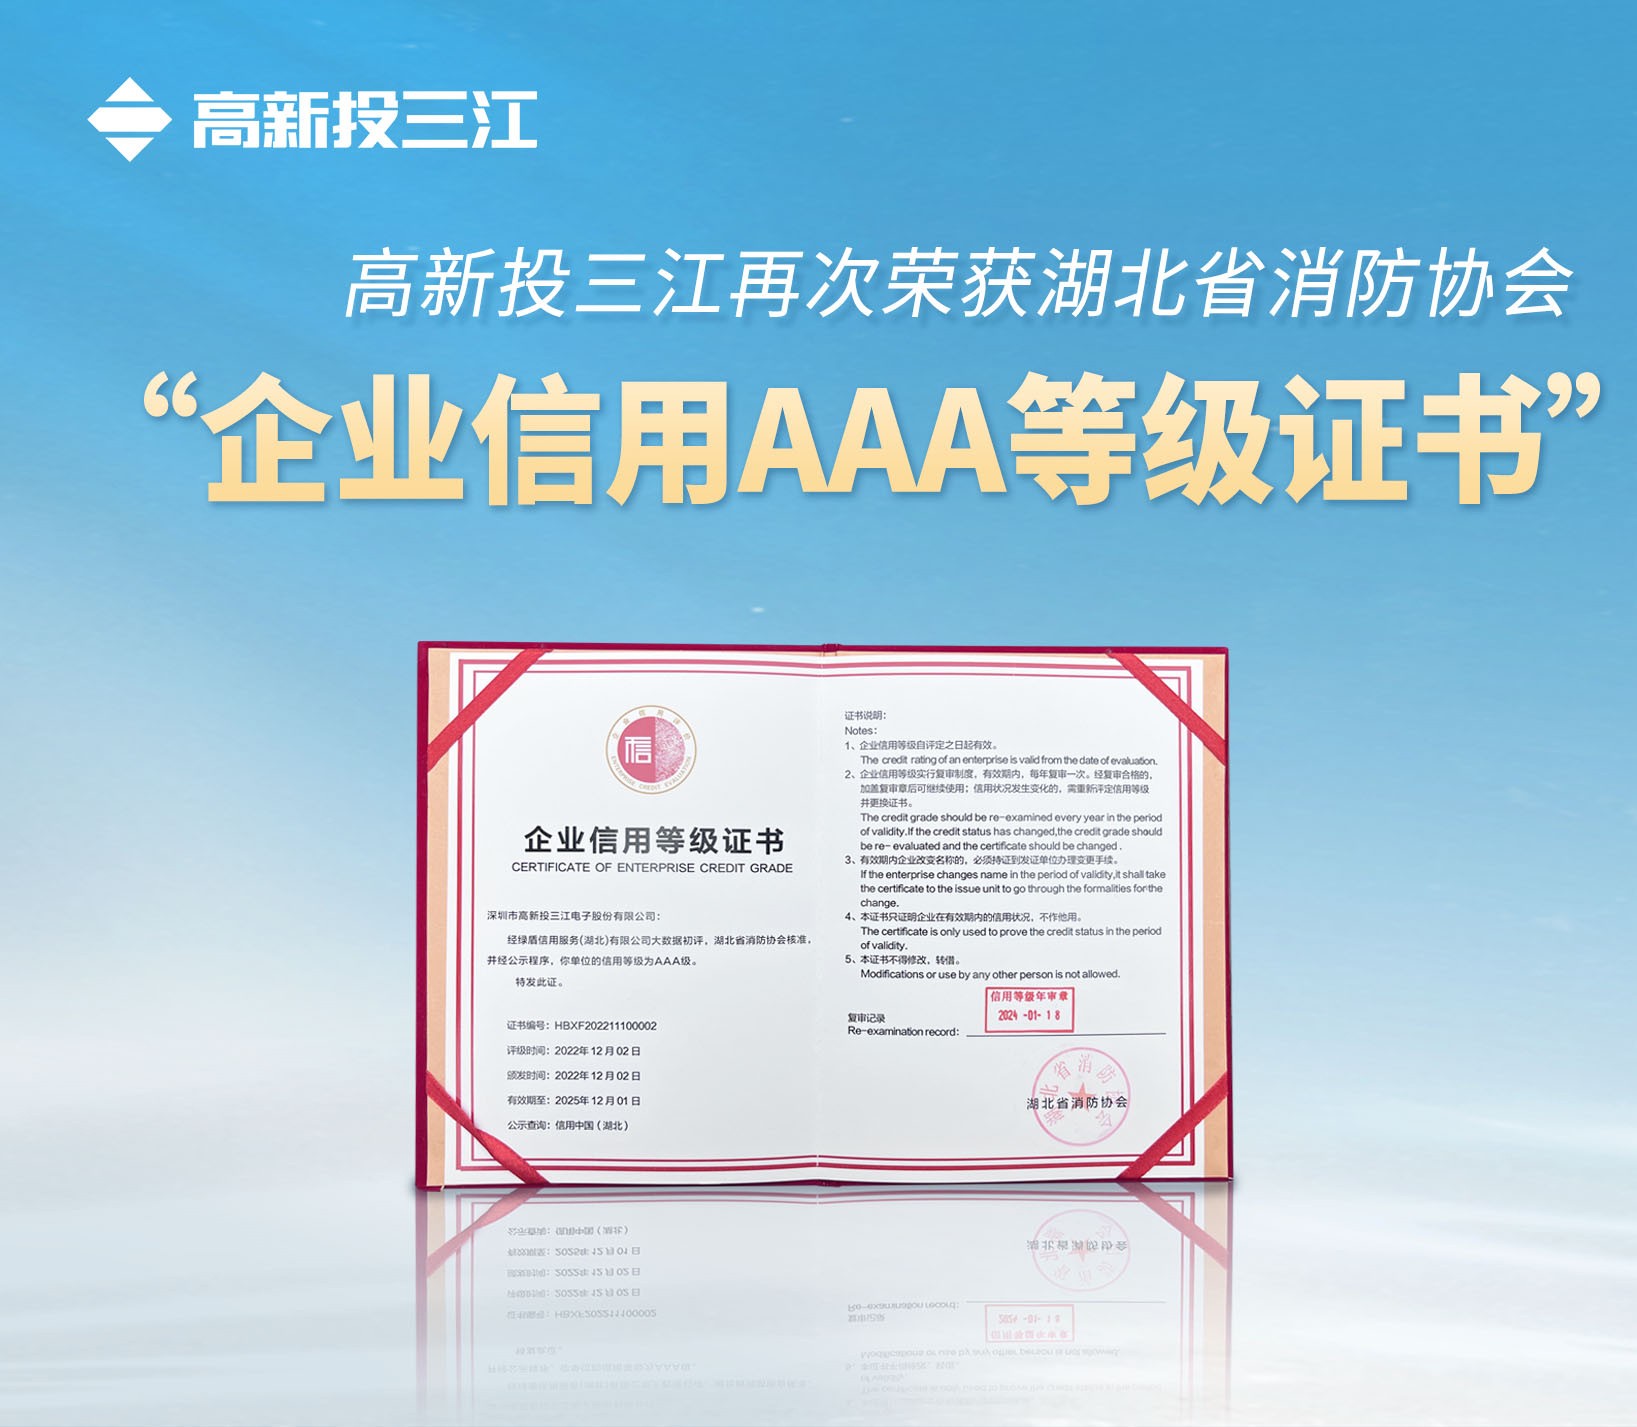 香港118彩色印刷图区再次荣获湖北省消防协会 “企业信用AAA等级证书”